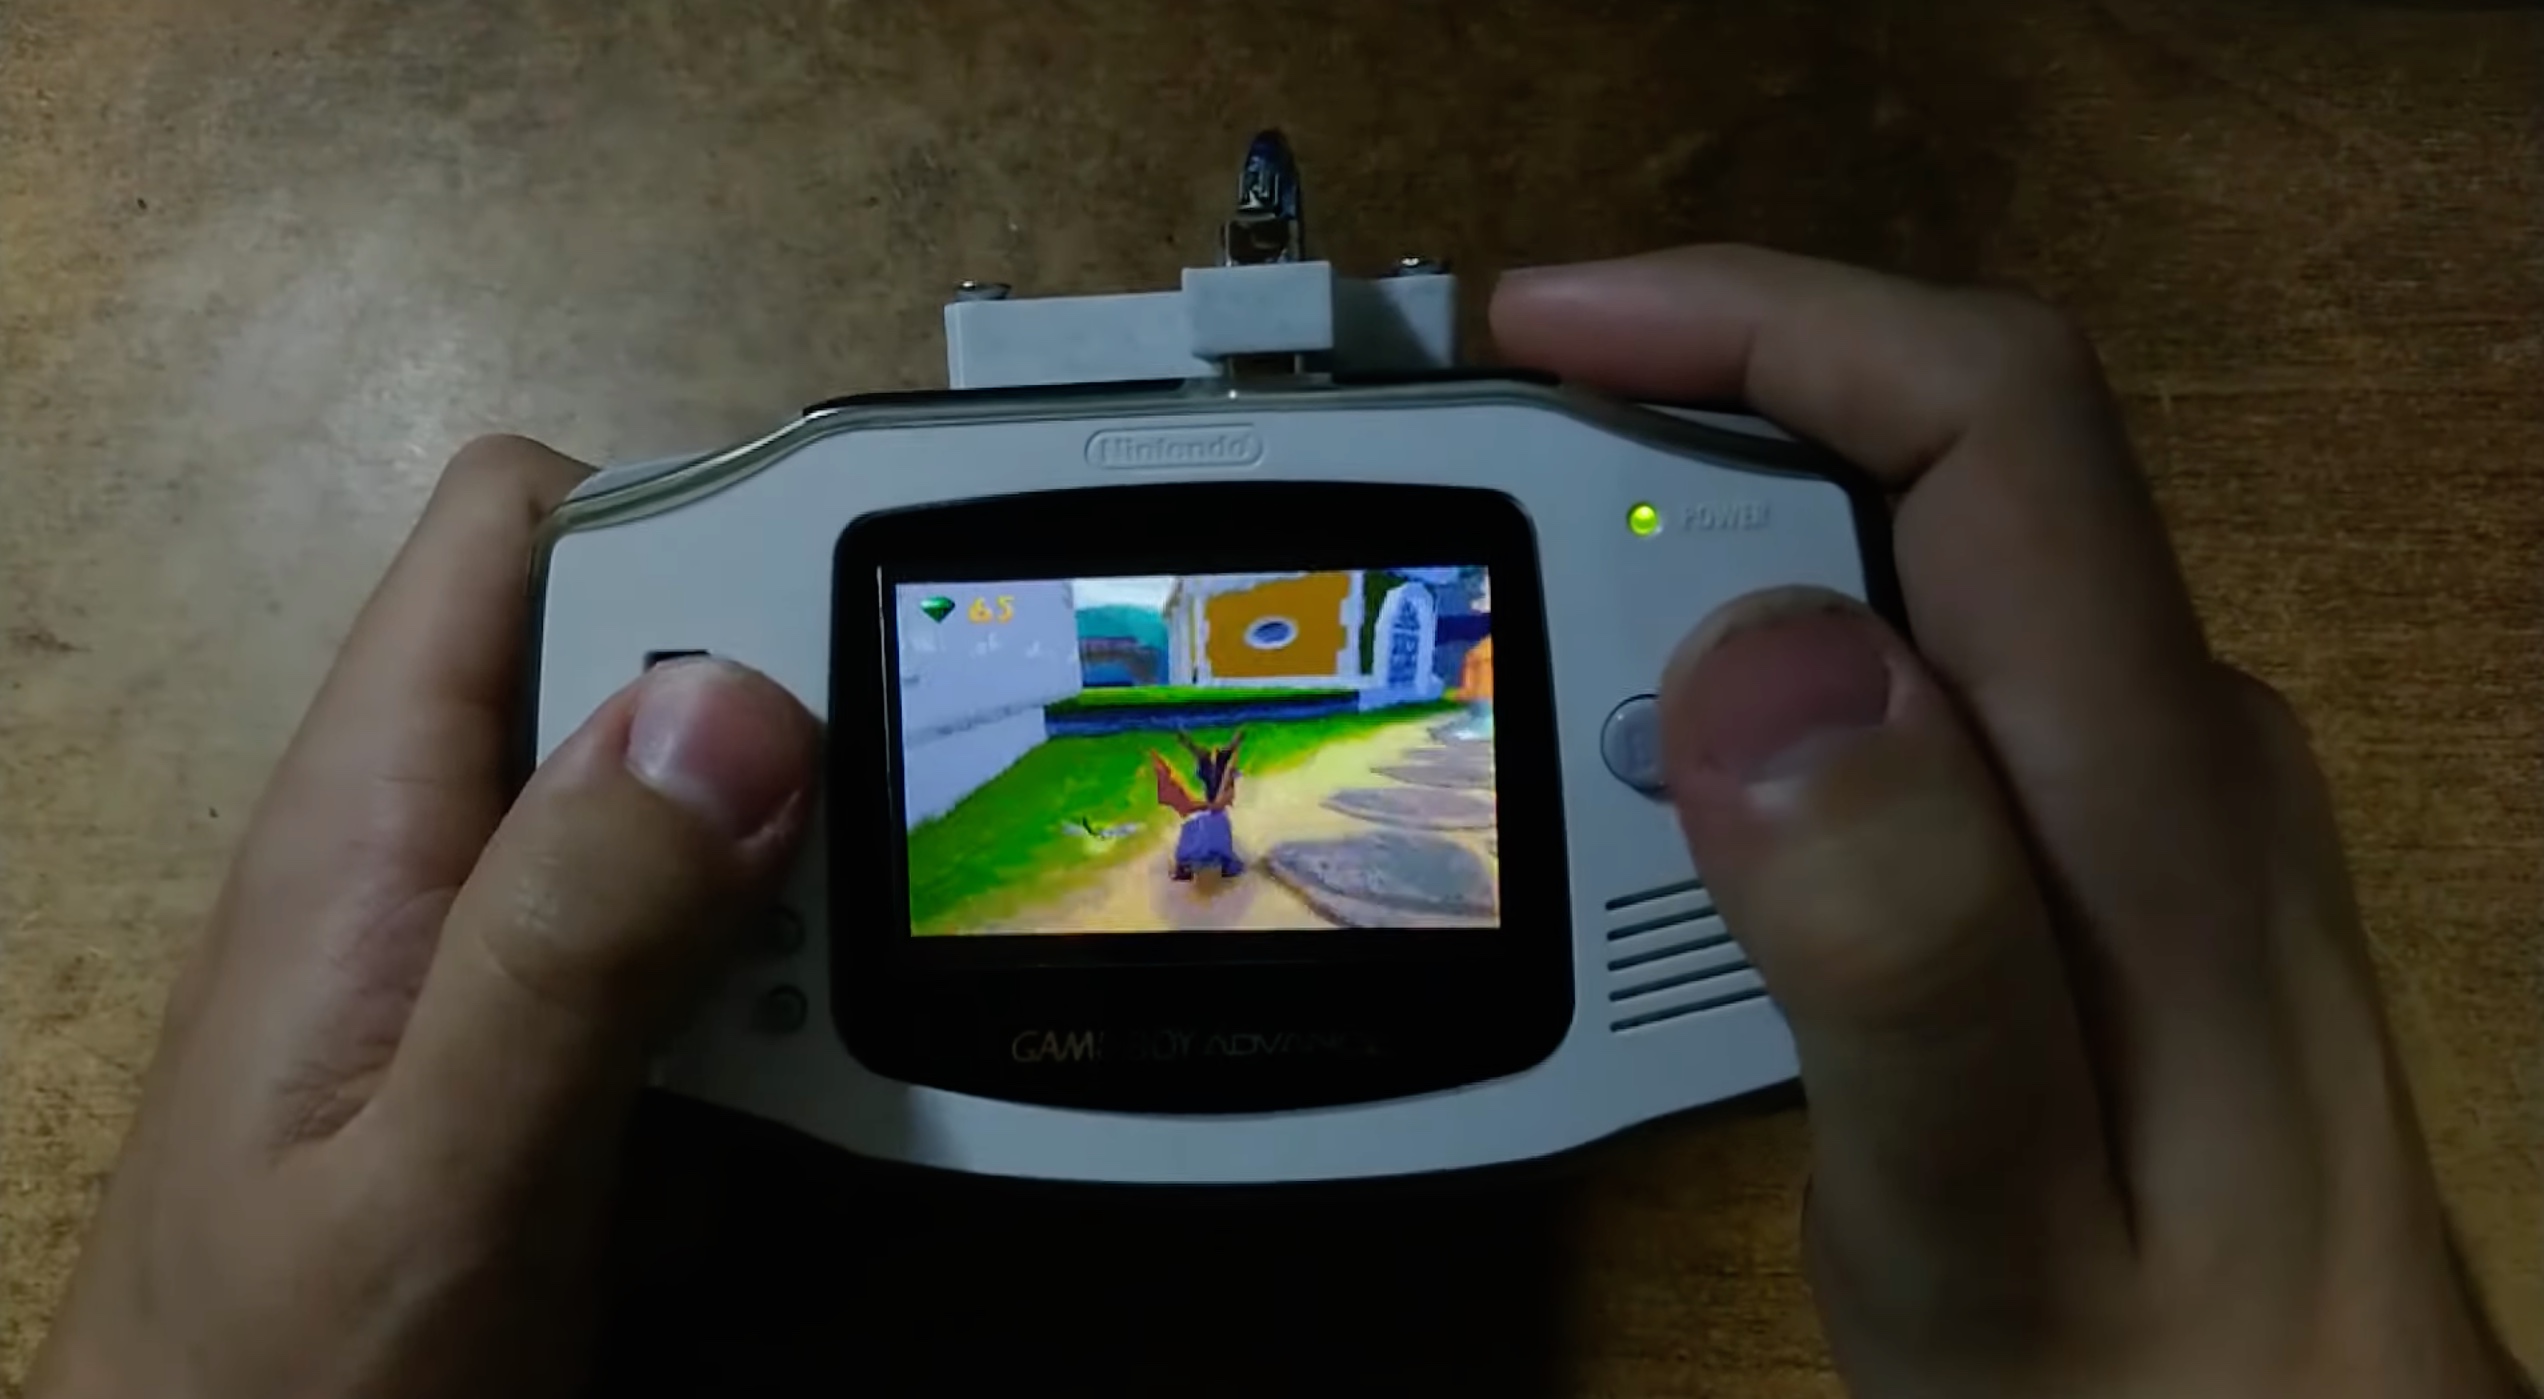 Jouer à la PS1 sur une Game Boy Advance, c’est possible… avec un Raspberry Pi